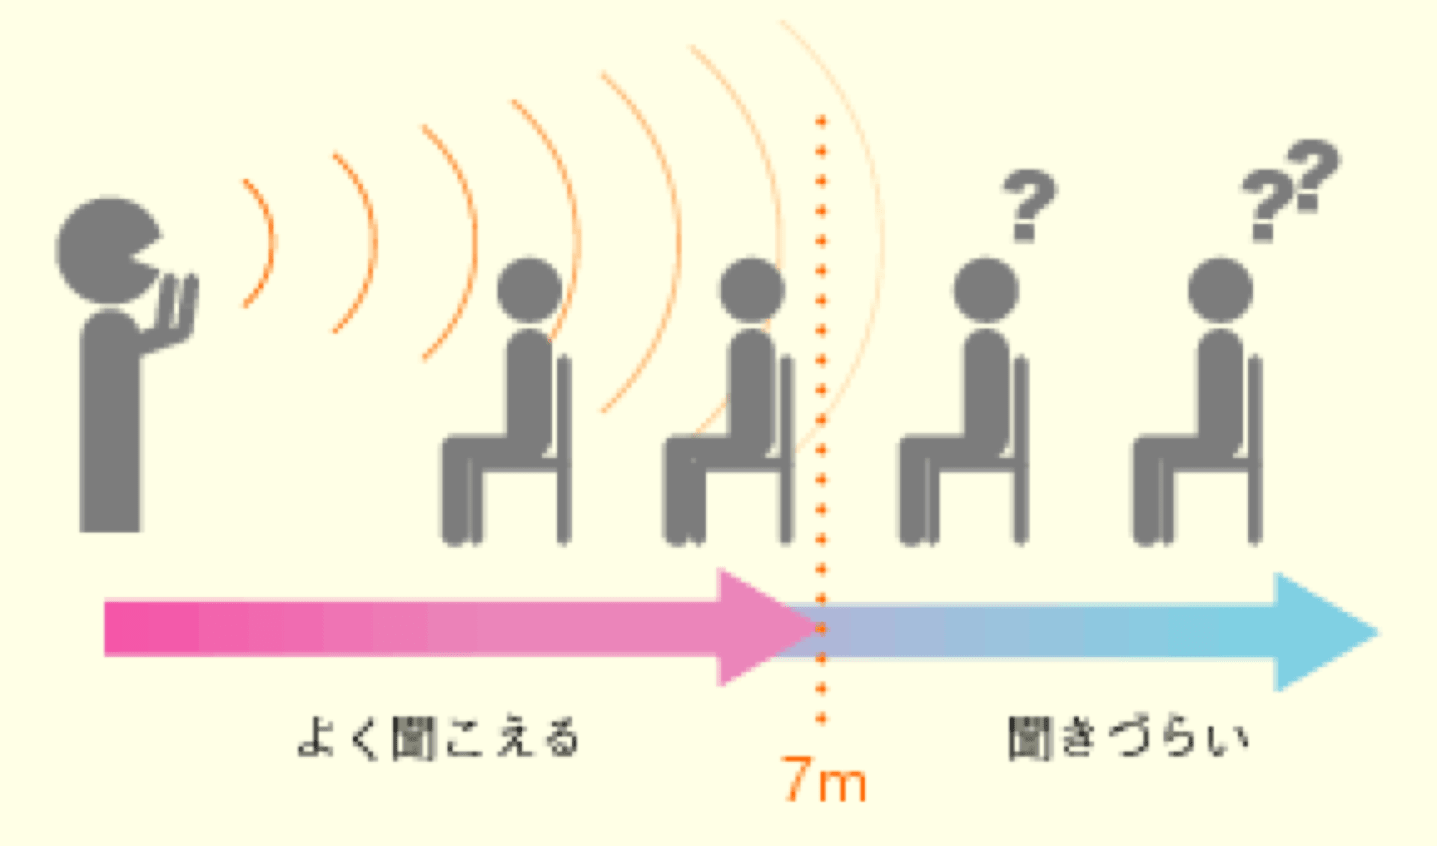 拡声系サウンドシステムが必要な空間の目安は7m